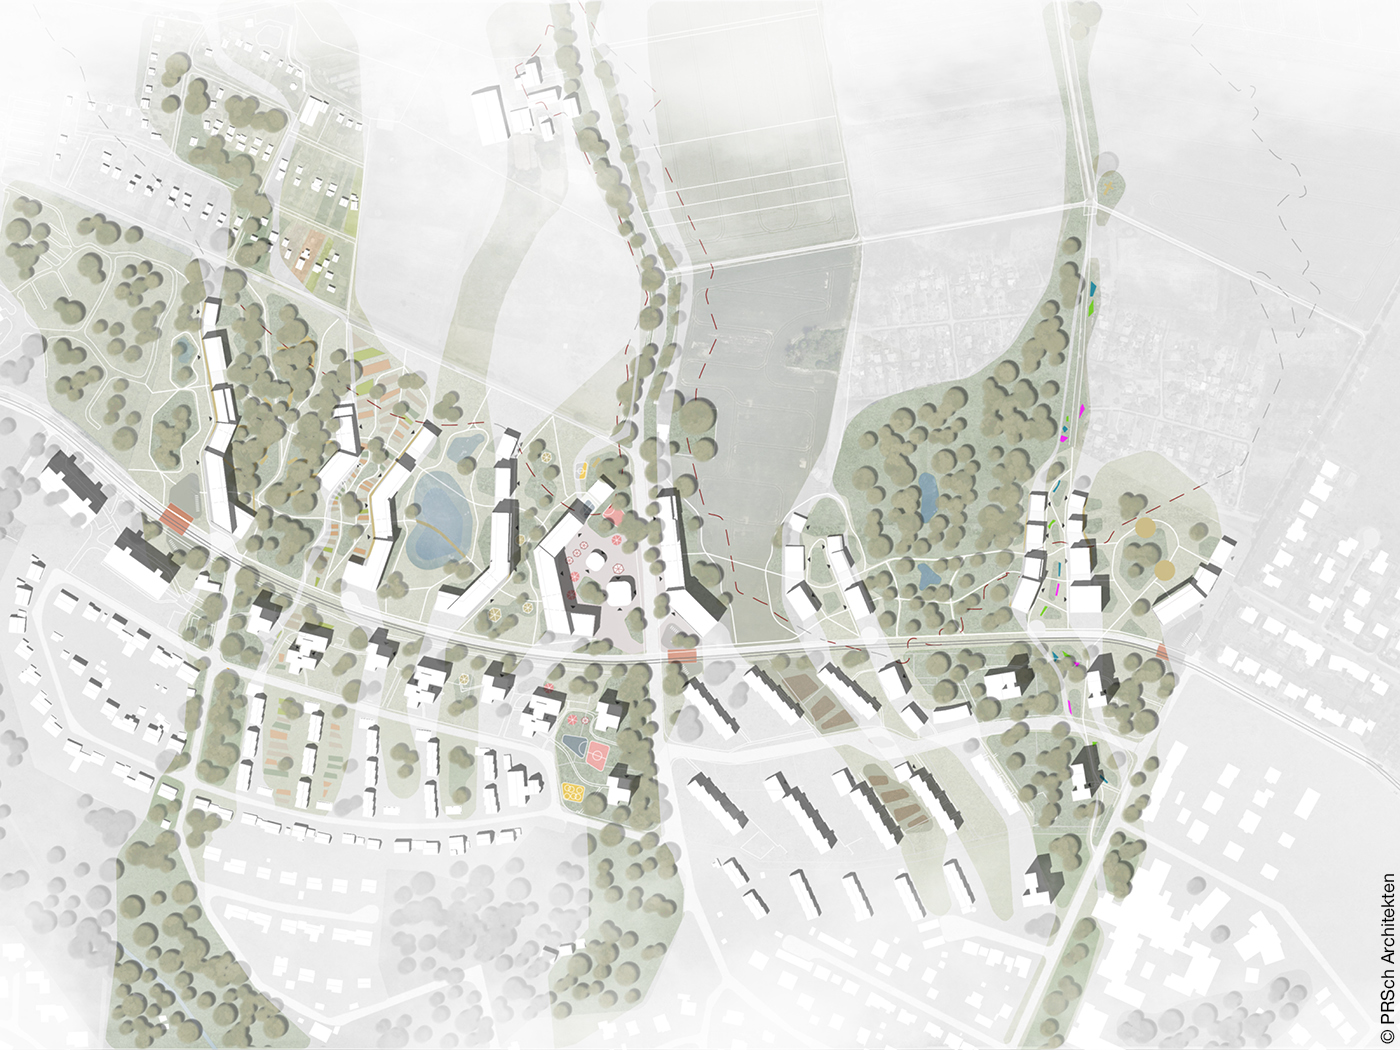 Der Lageplan des Projekts "SEX in the city" für ein Quartier in Kassel